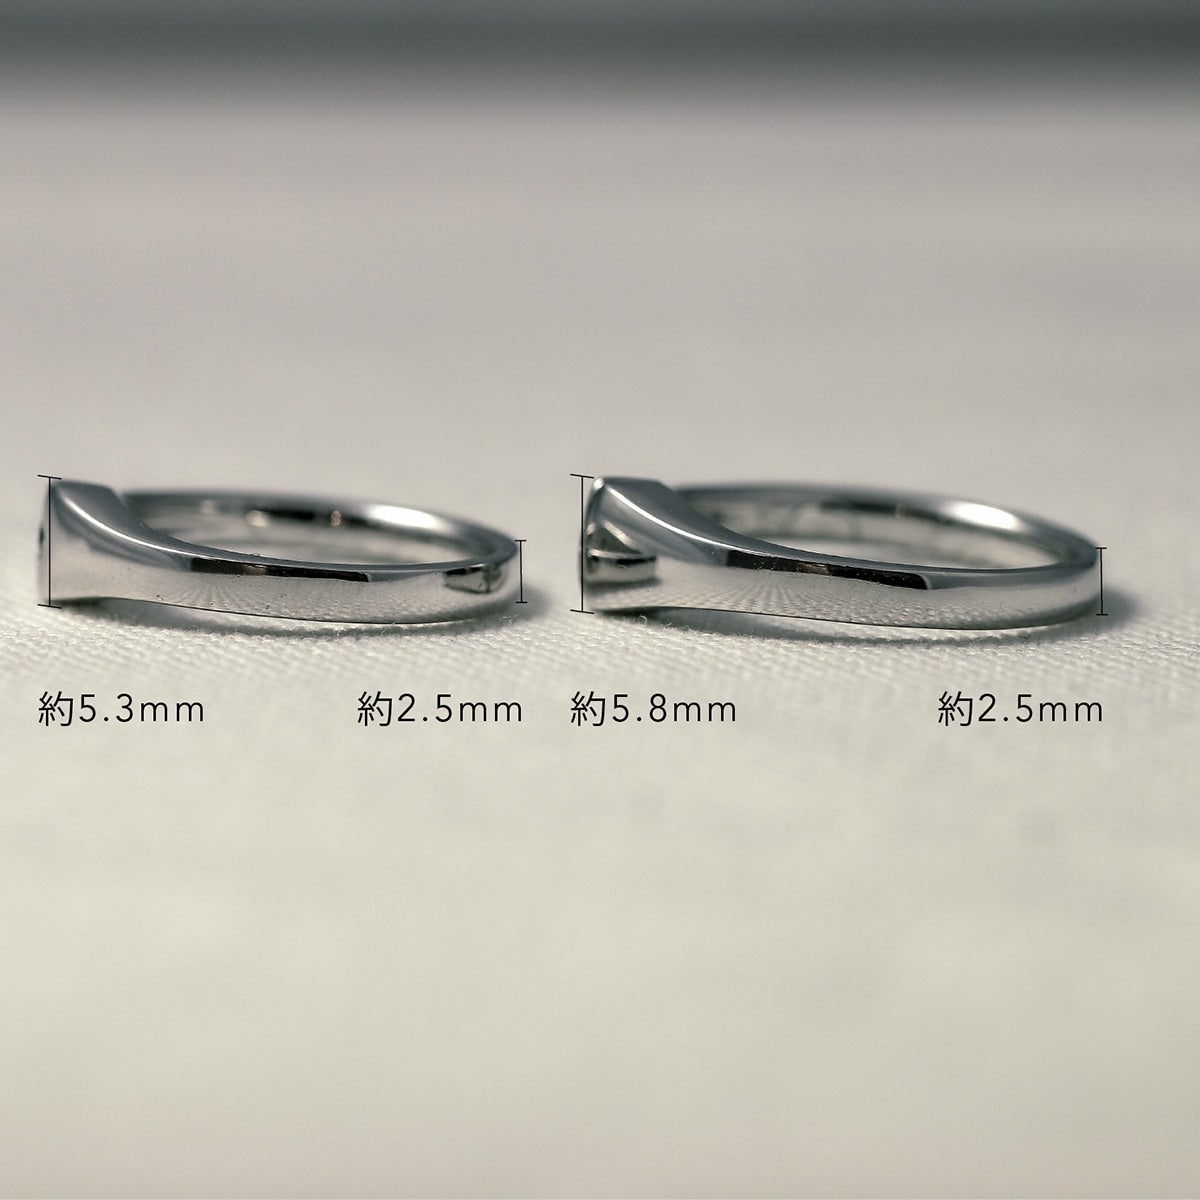 結婚指輪 ダイヤモンド 2本セット | kr5445kr5445